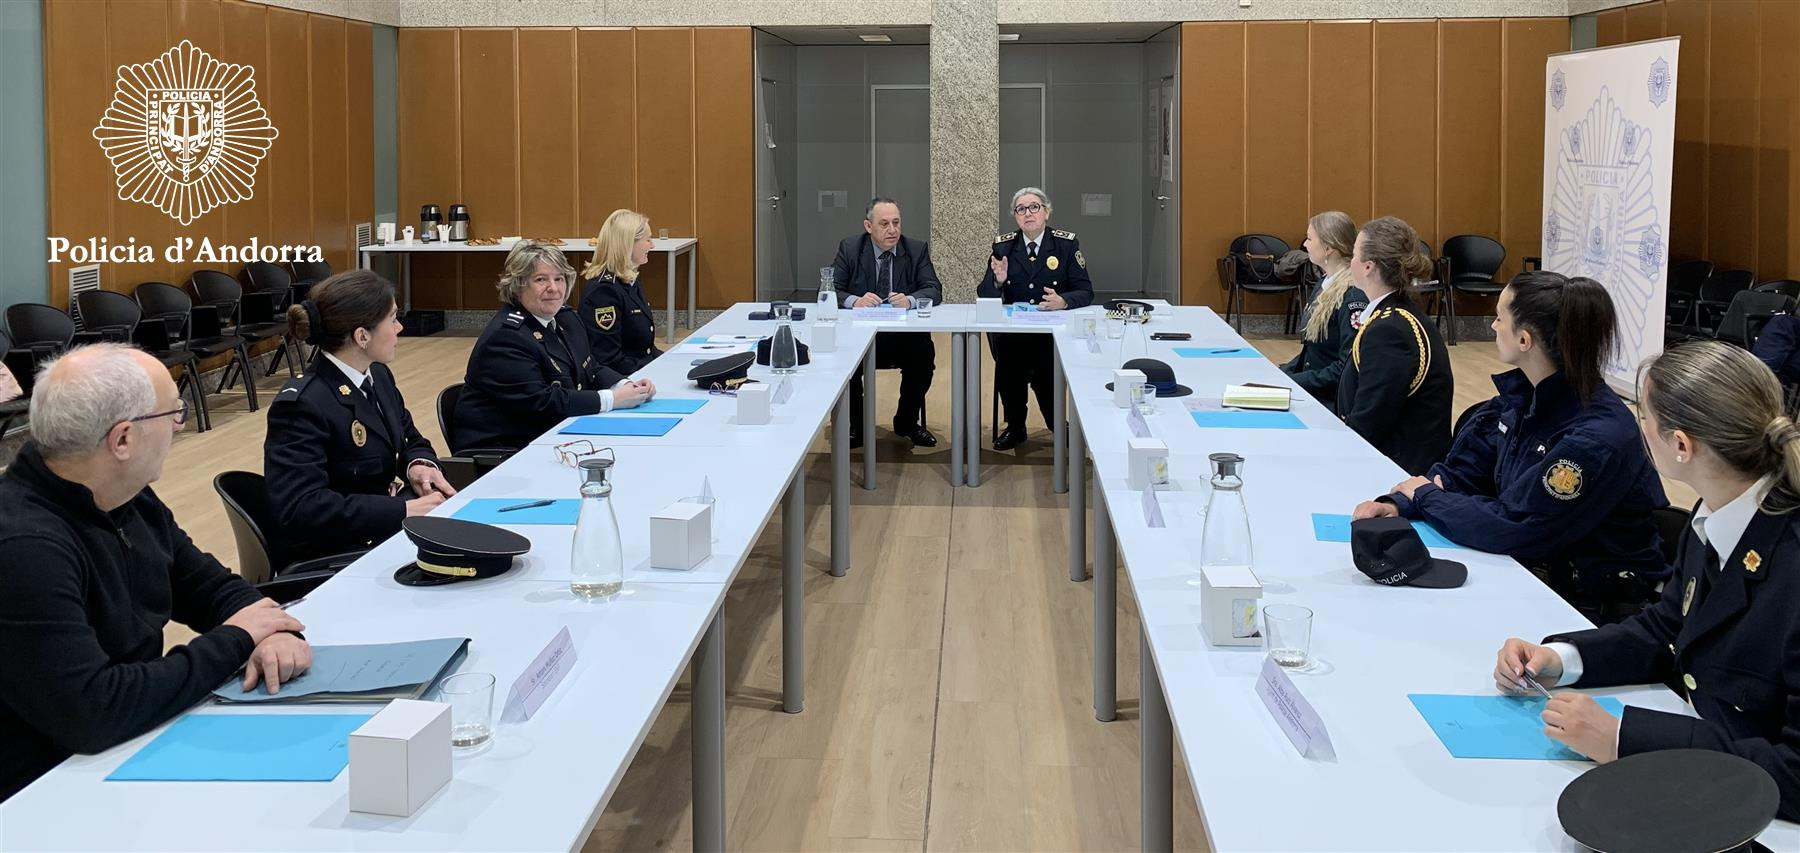 La Policia acull la reunió de la junta general de la Xarxa Europea de Dones Policia